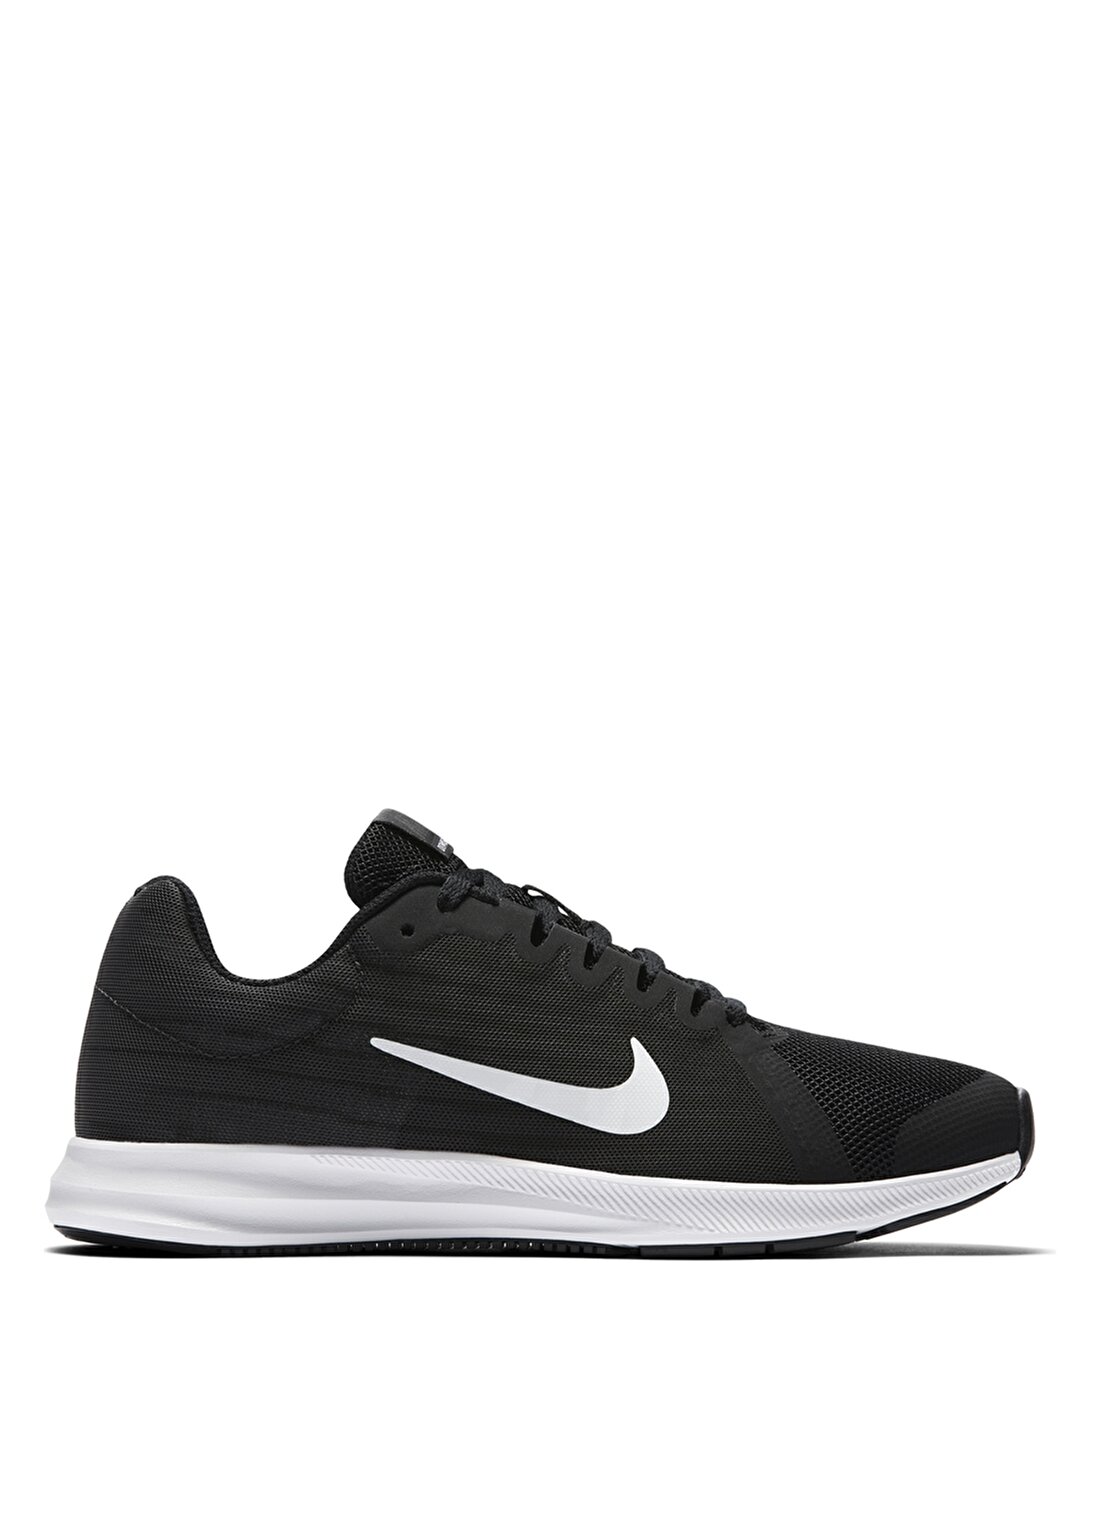 Nike Downshifter 8 922853-001 Yürüyüş Ayakkabısı